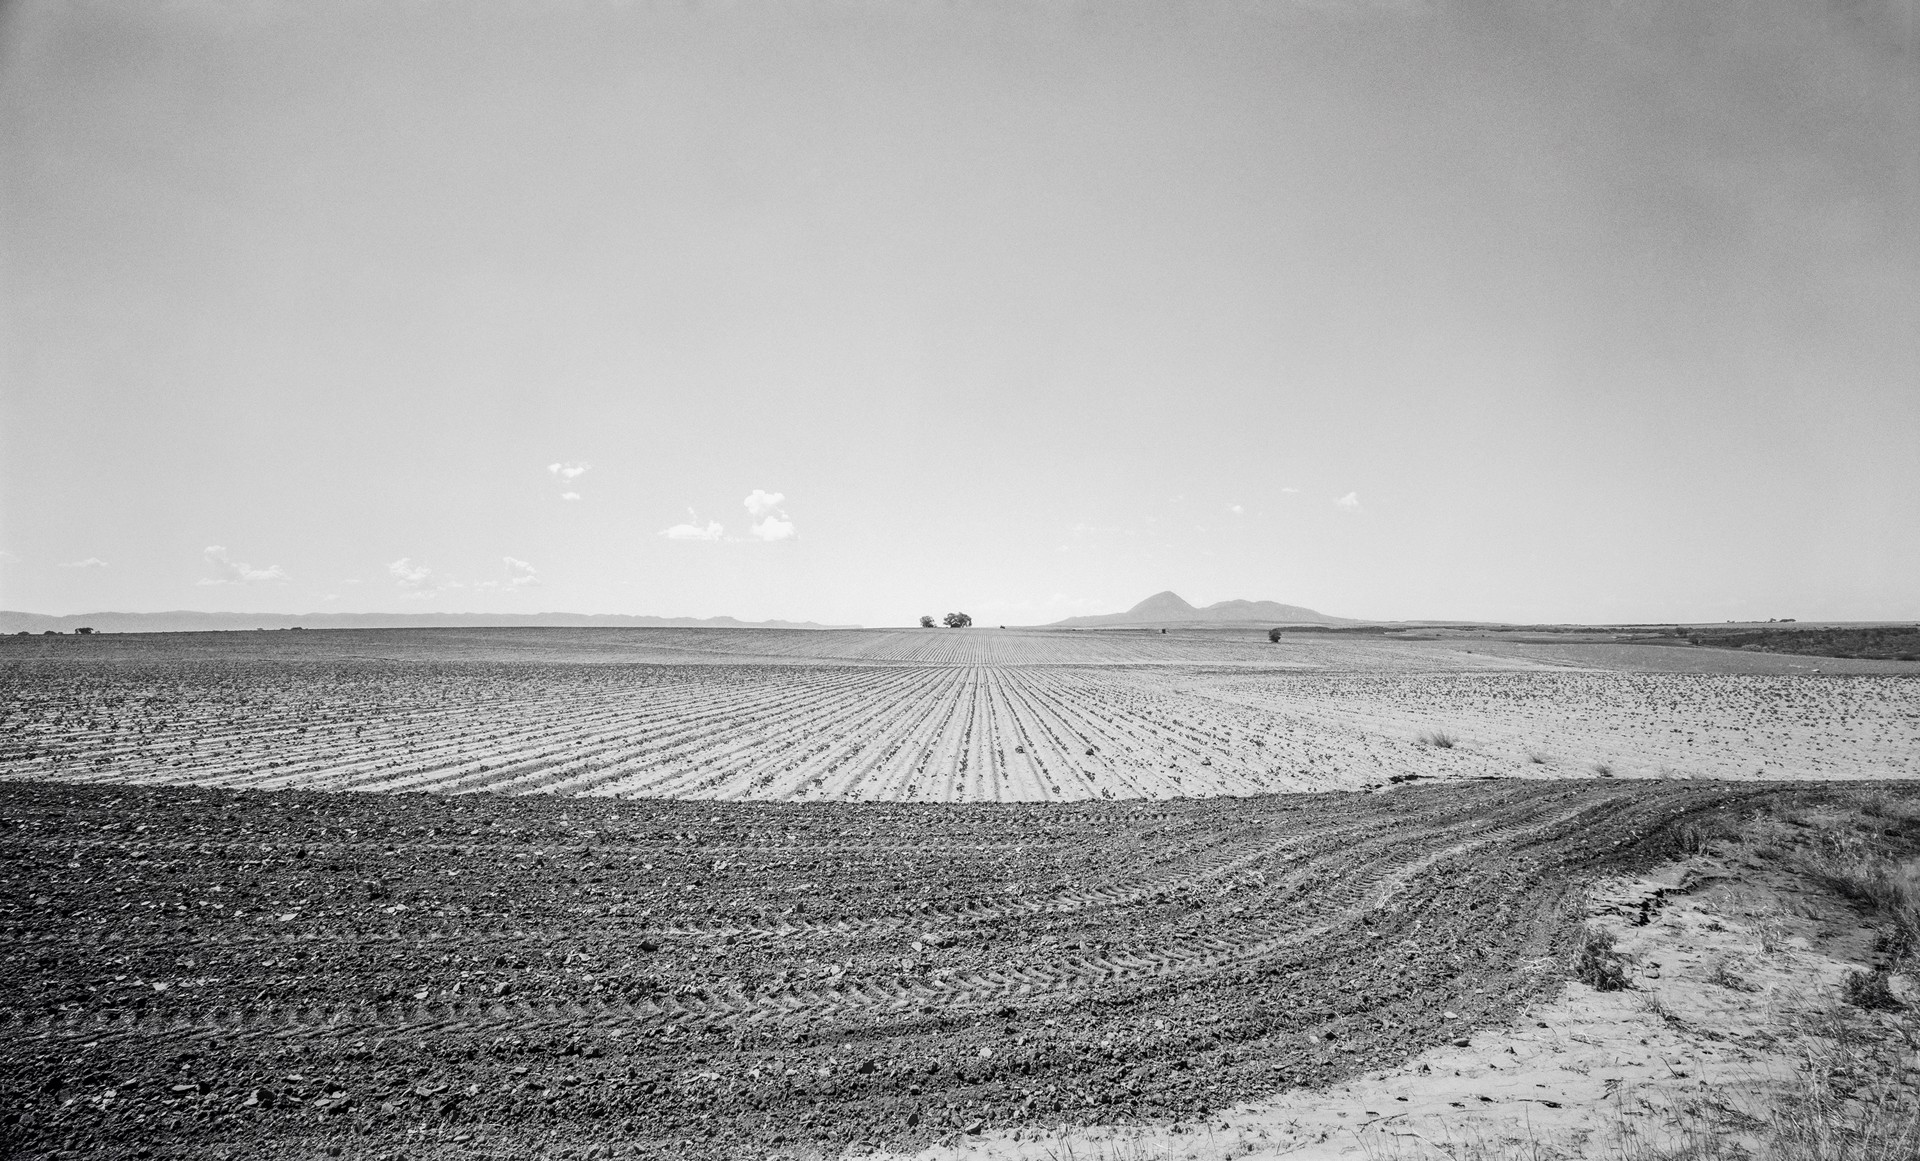 Plowed Field, Sleeping Ute Mountain, Near Cortez, Colorado by Lawrence McFarland